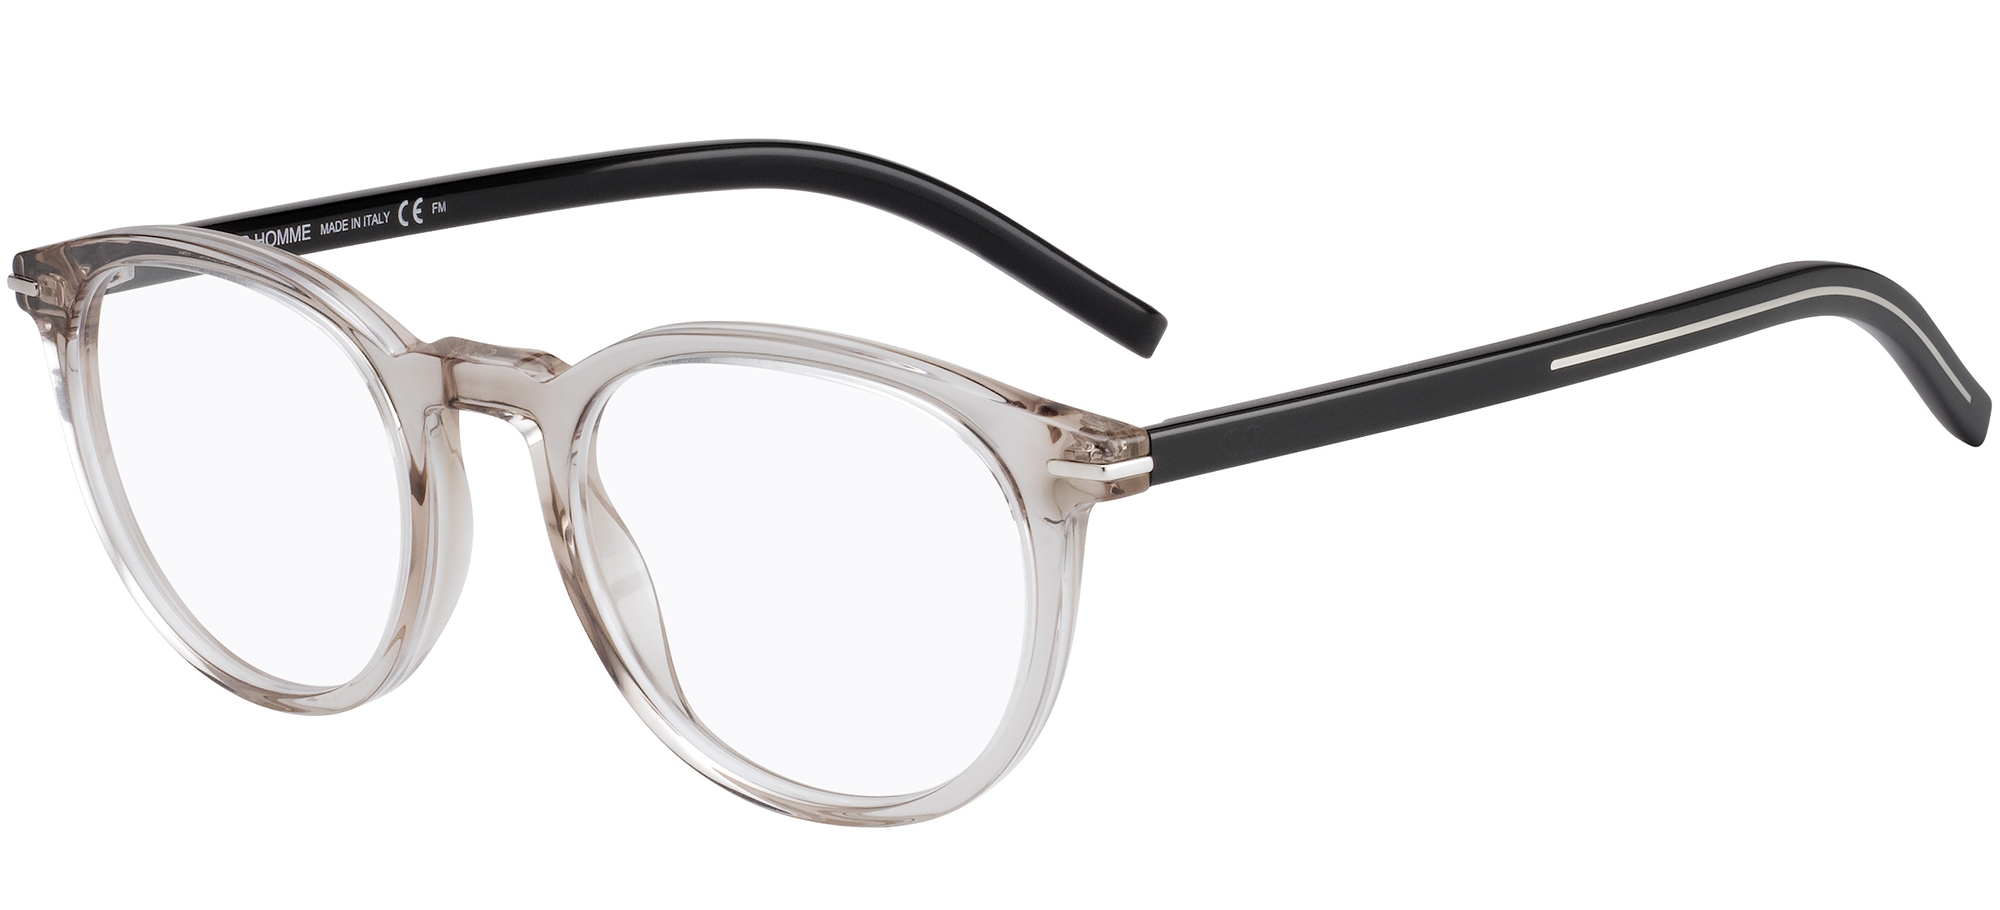 Dior Homme Blacktie 114 Eyeglasses FRAMES 807 Black 5214145 Textured  F728  eBay